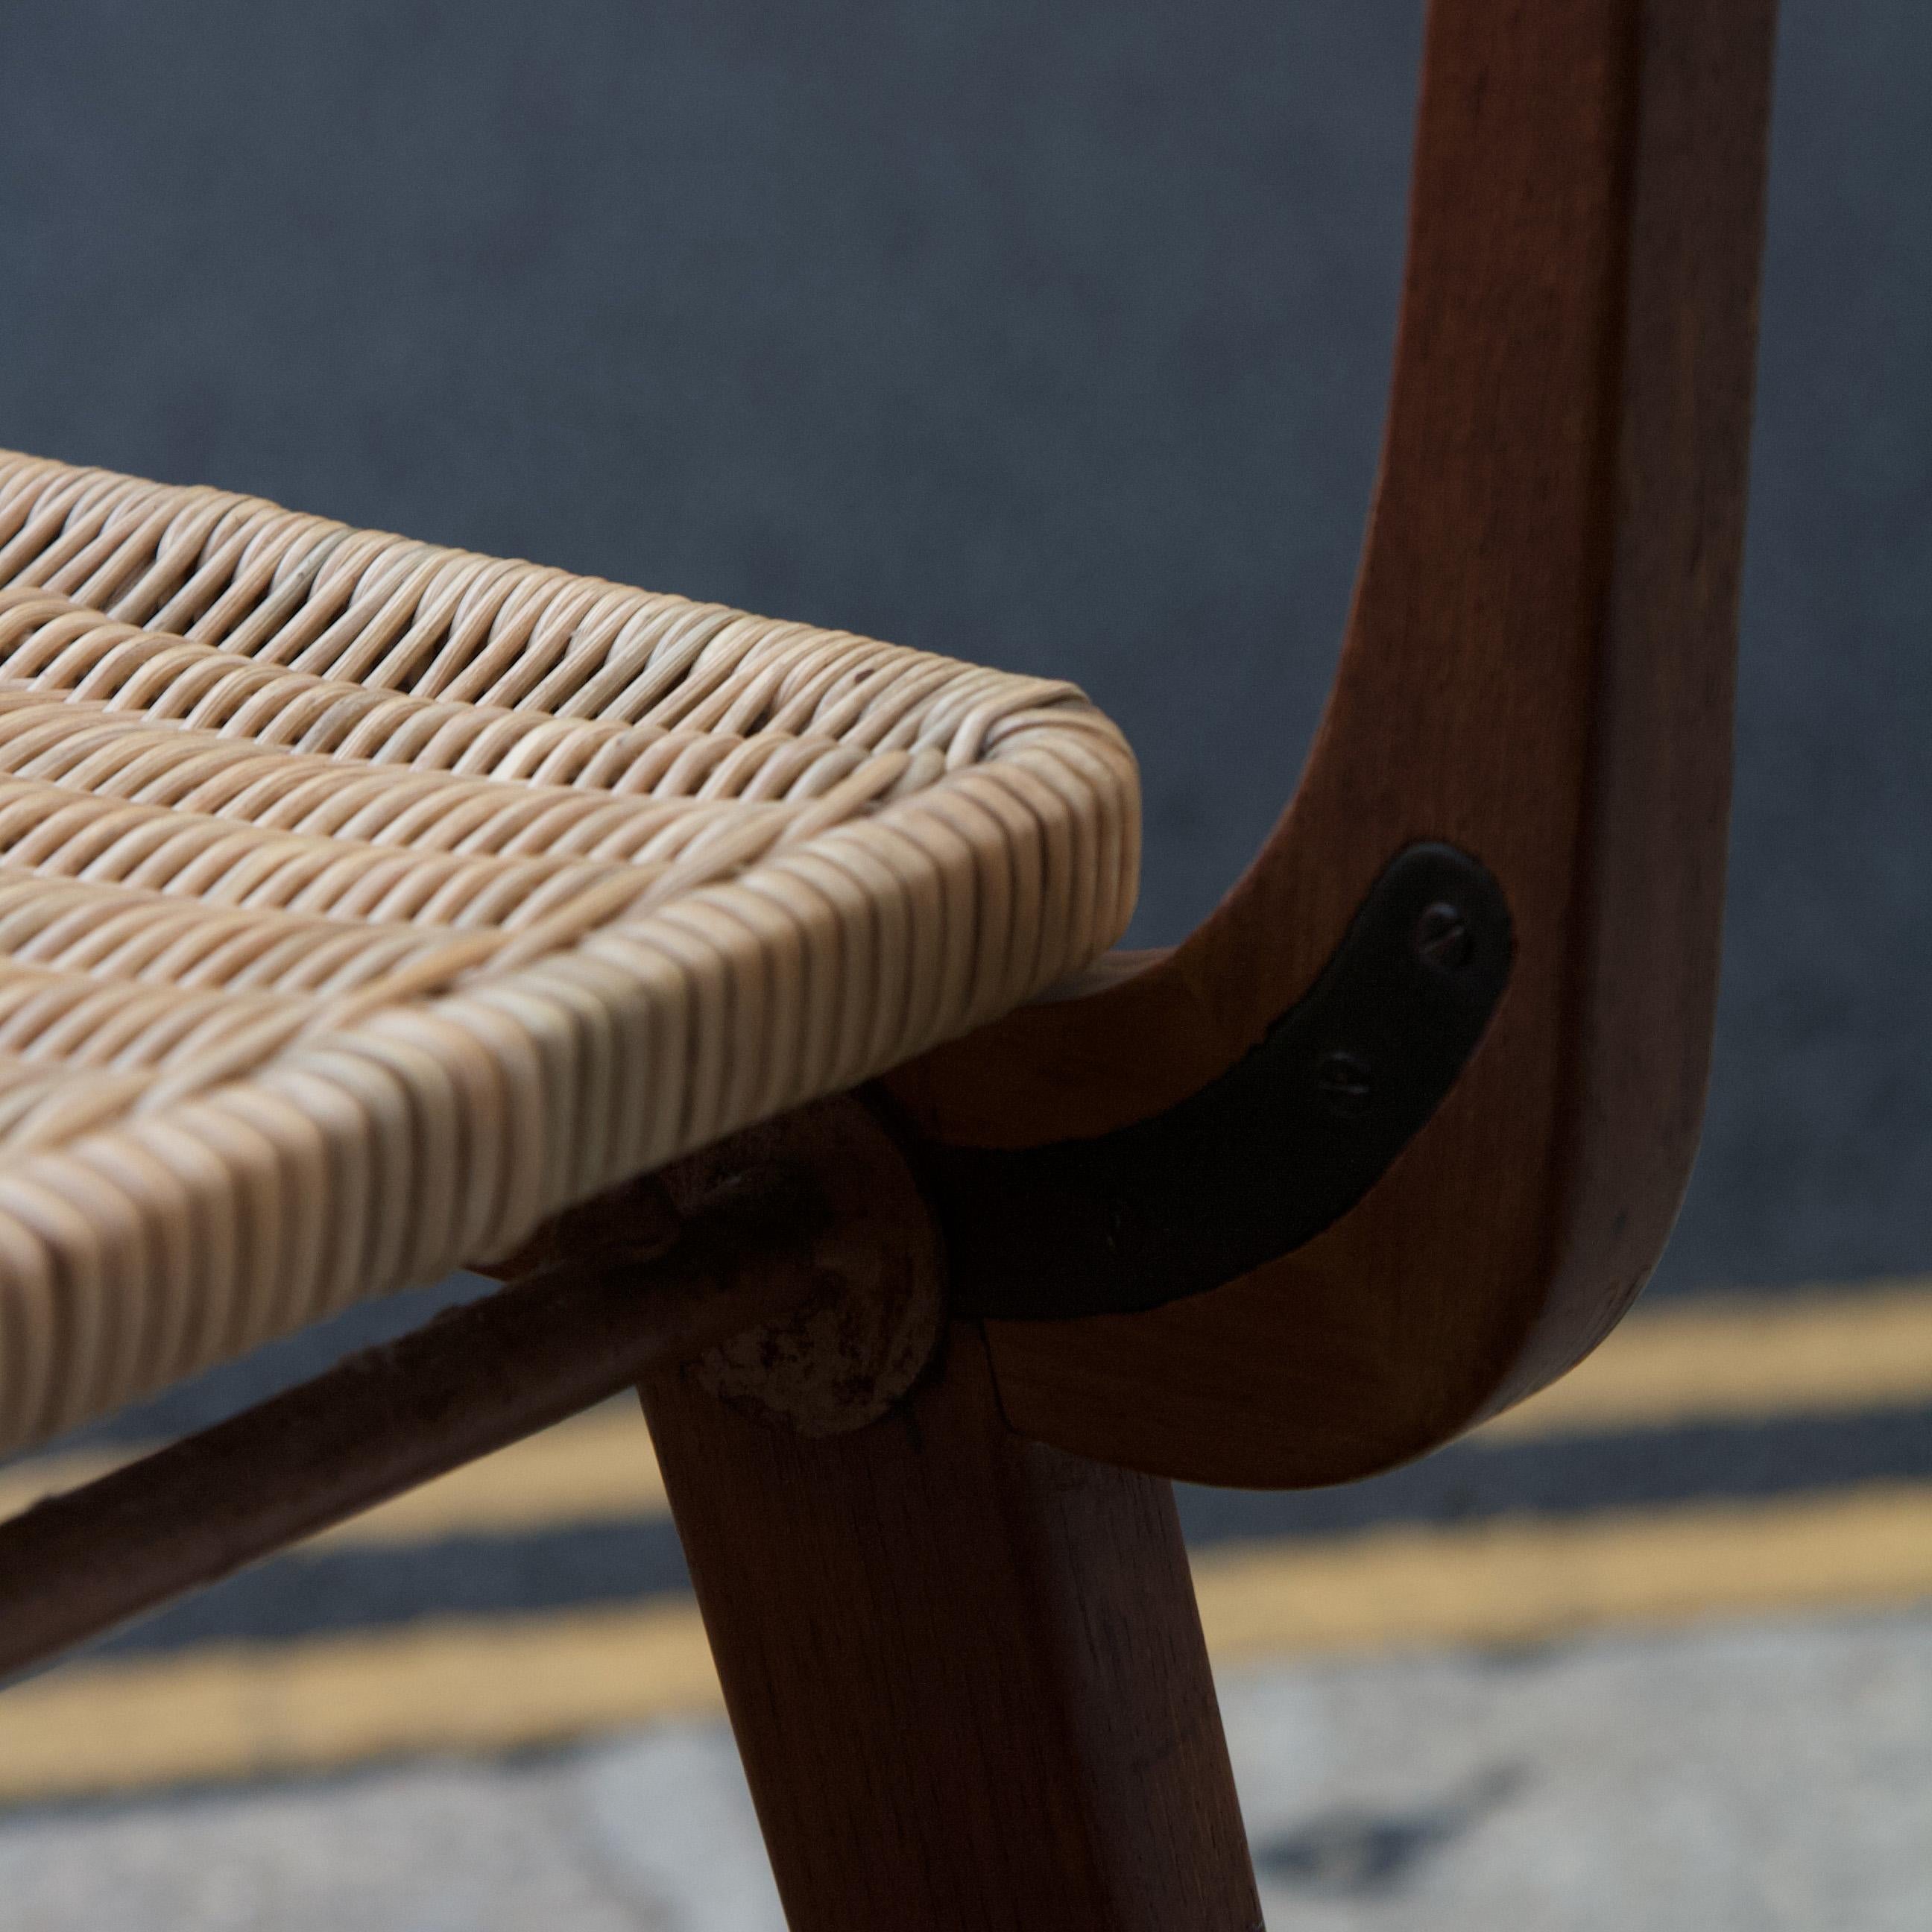 Ein Teakholzstuhl, der wahrscheinlich in den frühen 1950er Jahren in Frankreich hergestellt wurde. 

Sitz und Rückenlehne dieses Stuhls bestehen aus Korbgeflecht, das um einen Stahlrahmen geflochten ist, der am Teakholzkörper des Stuhls befestigt